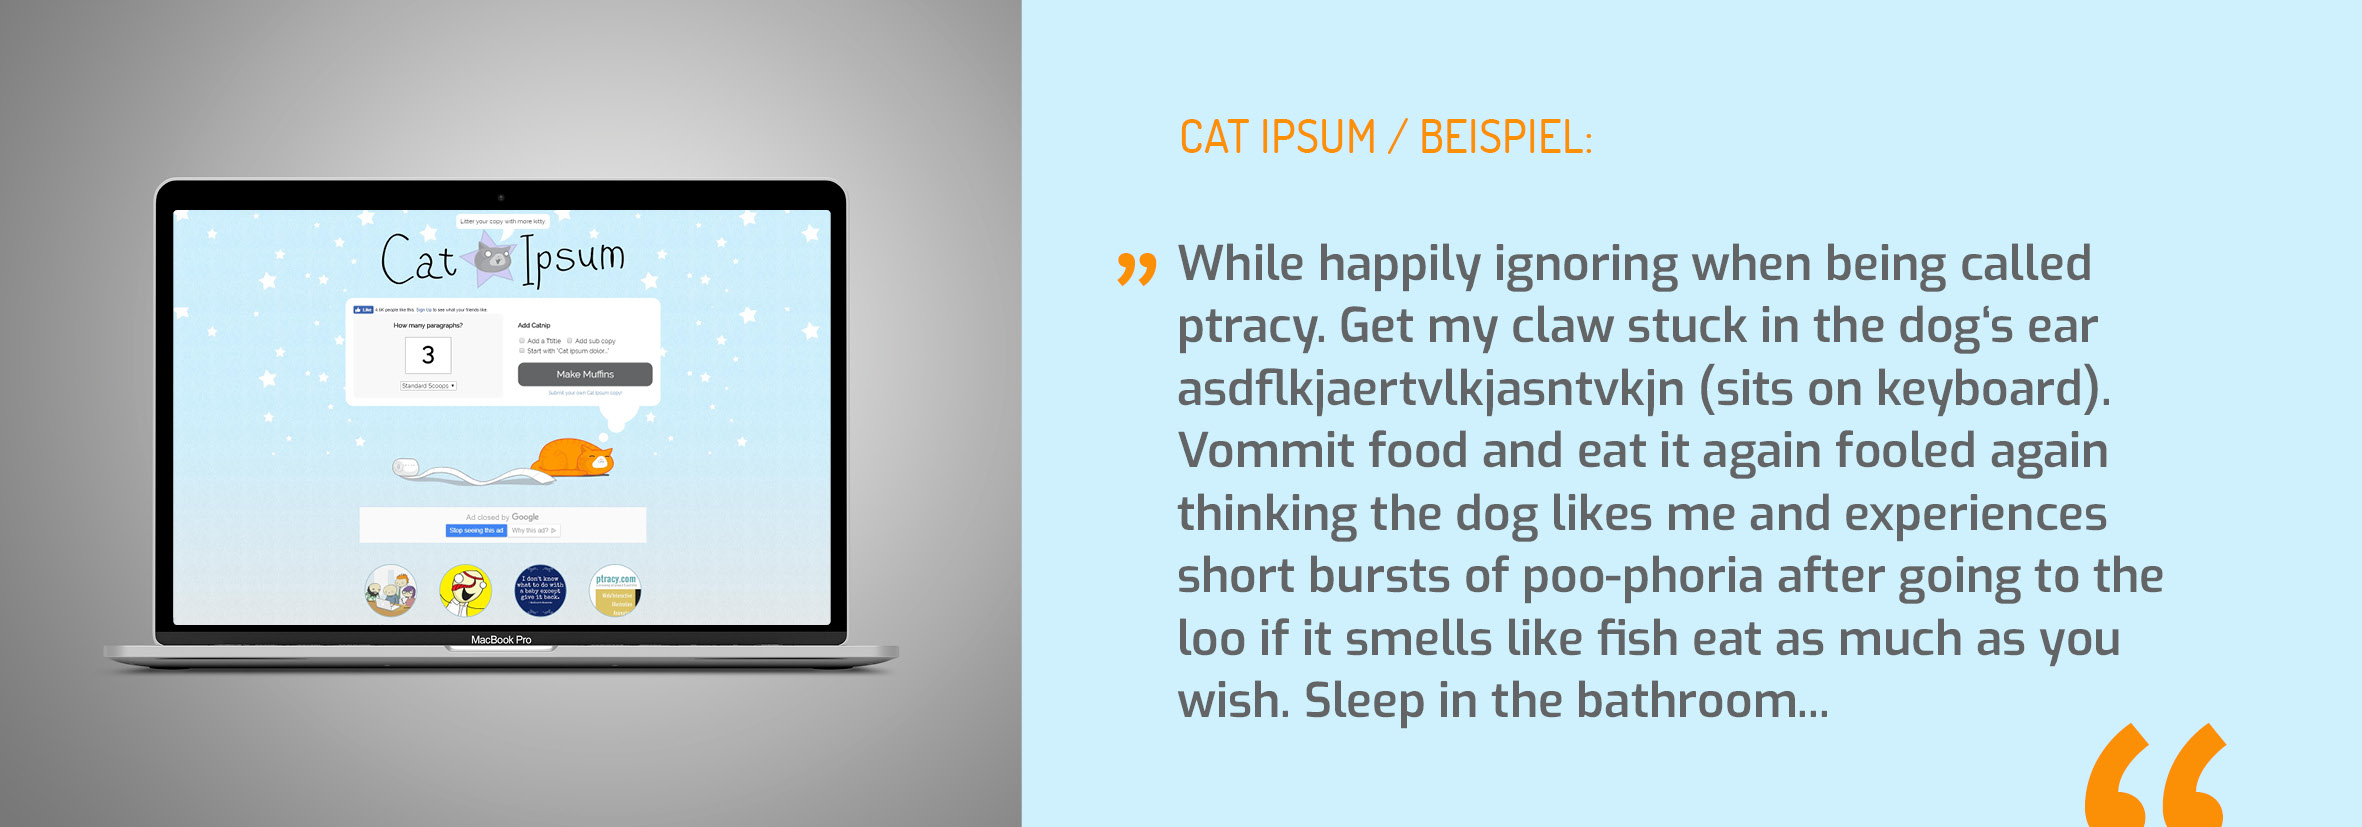 Blindtexte - Cat Ipsum